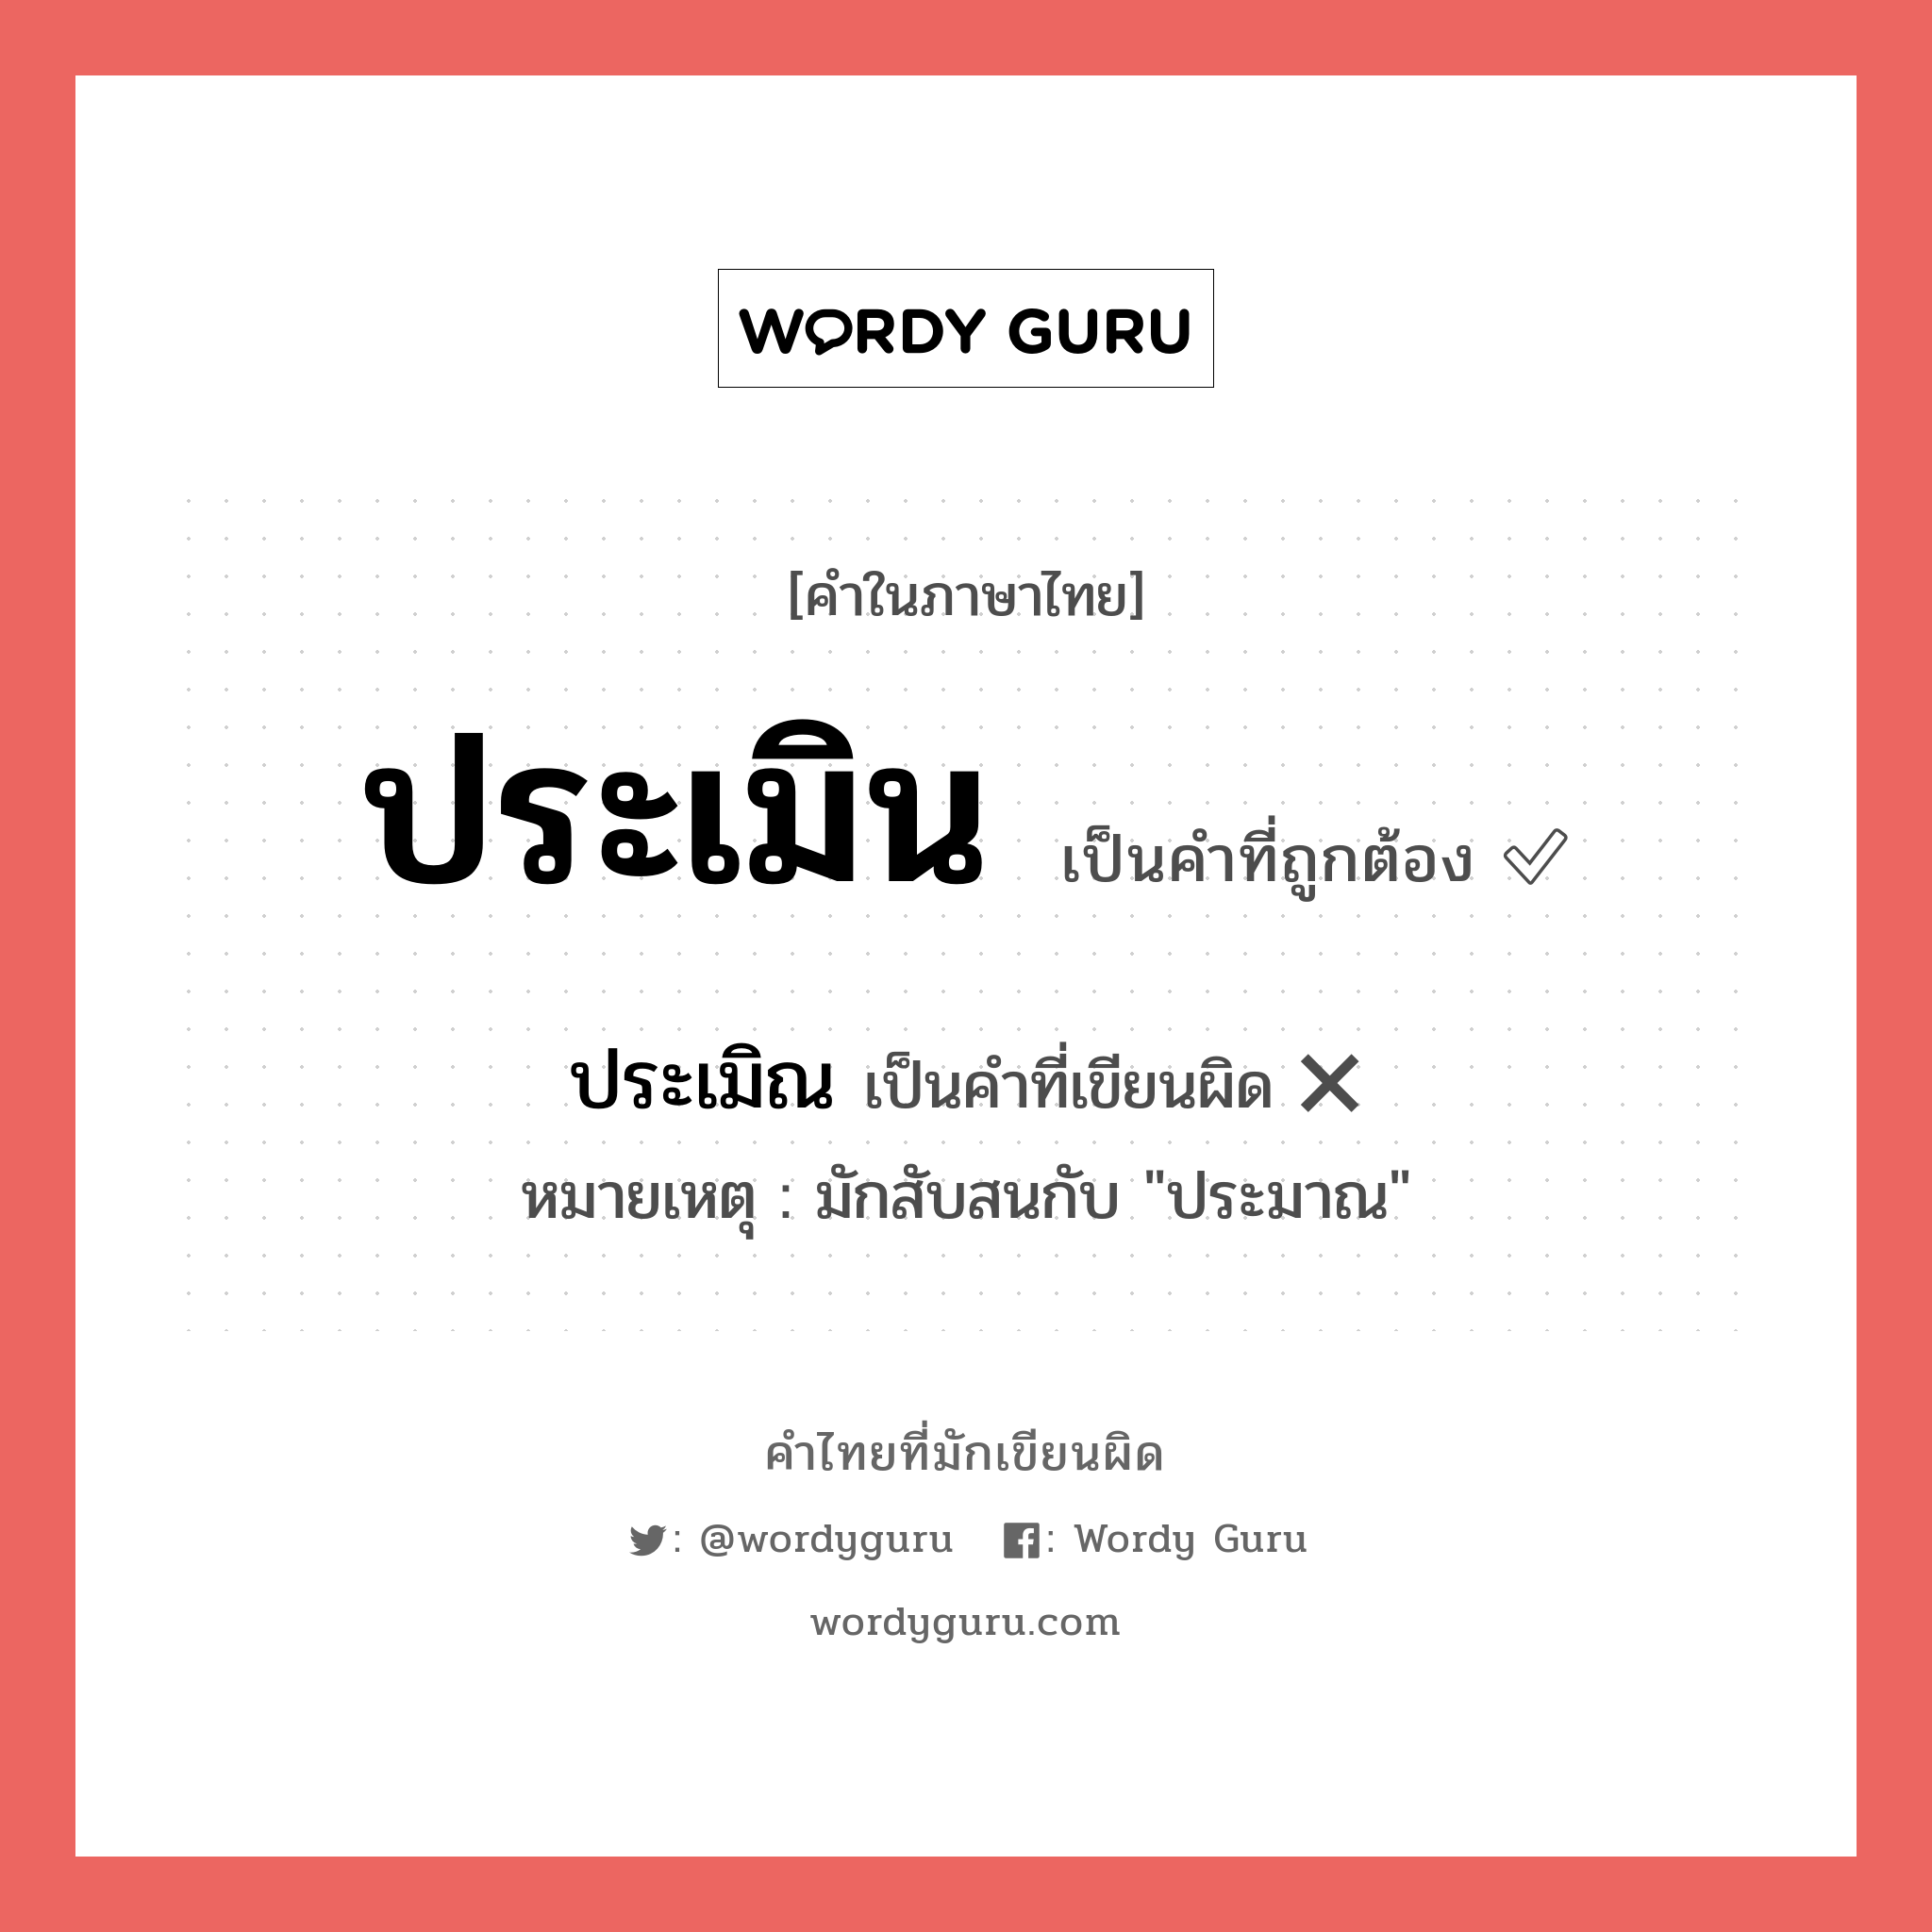 ประเมิน หรือ ประเมิณ เขียนยังไง? คำไหนเขียนถูก?, คำในภาษาไทยที่มักเขียนผิด ประเมิน คำที่ผิด ❌ ประเมิณ หมายเหตุ มักสับสนกับ "ประมาณ"